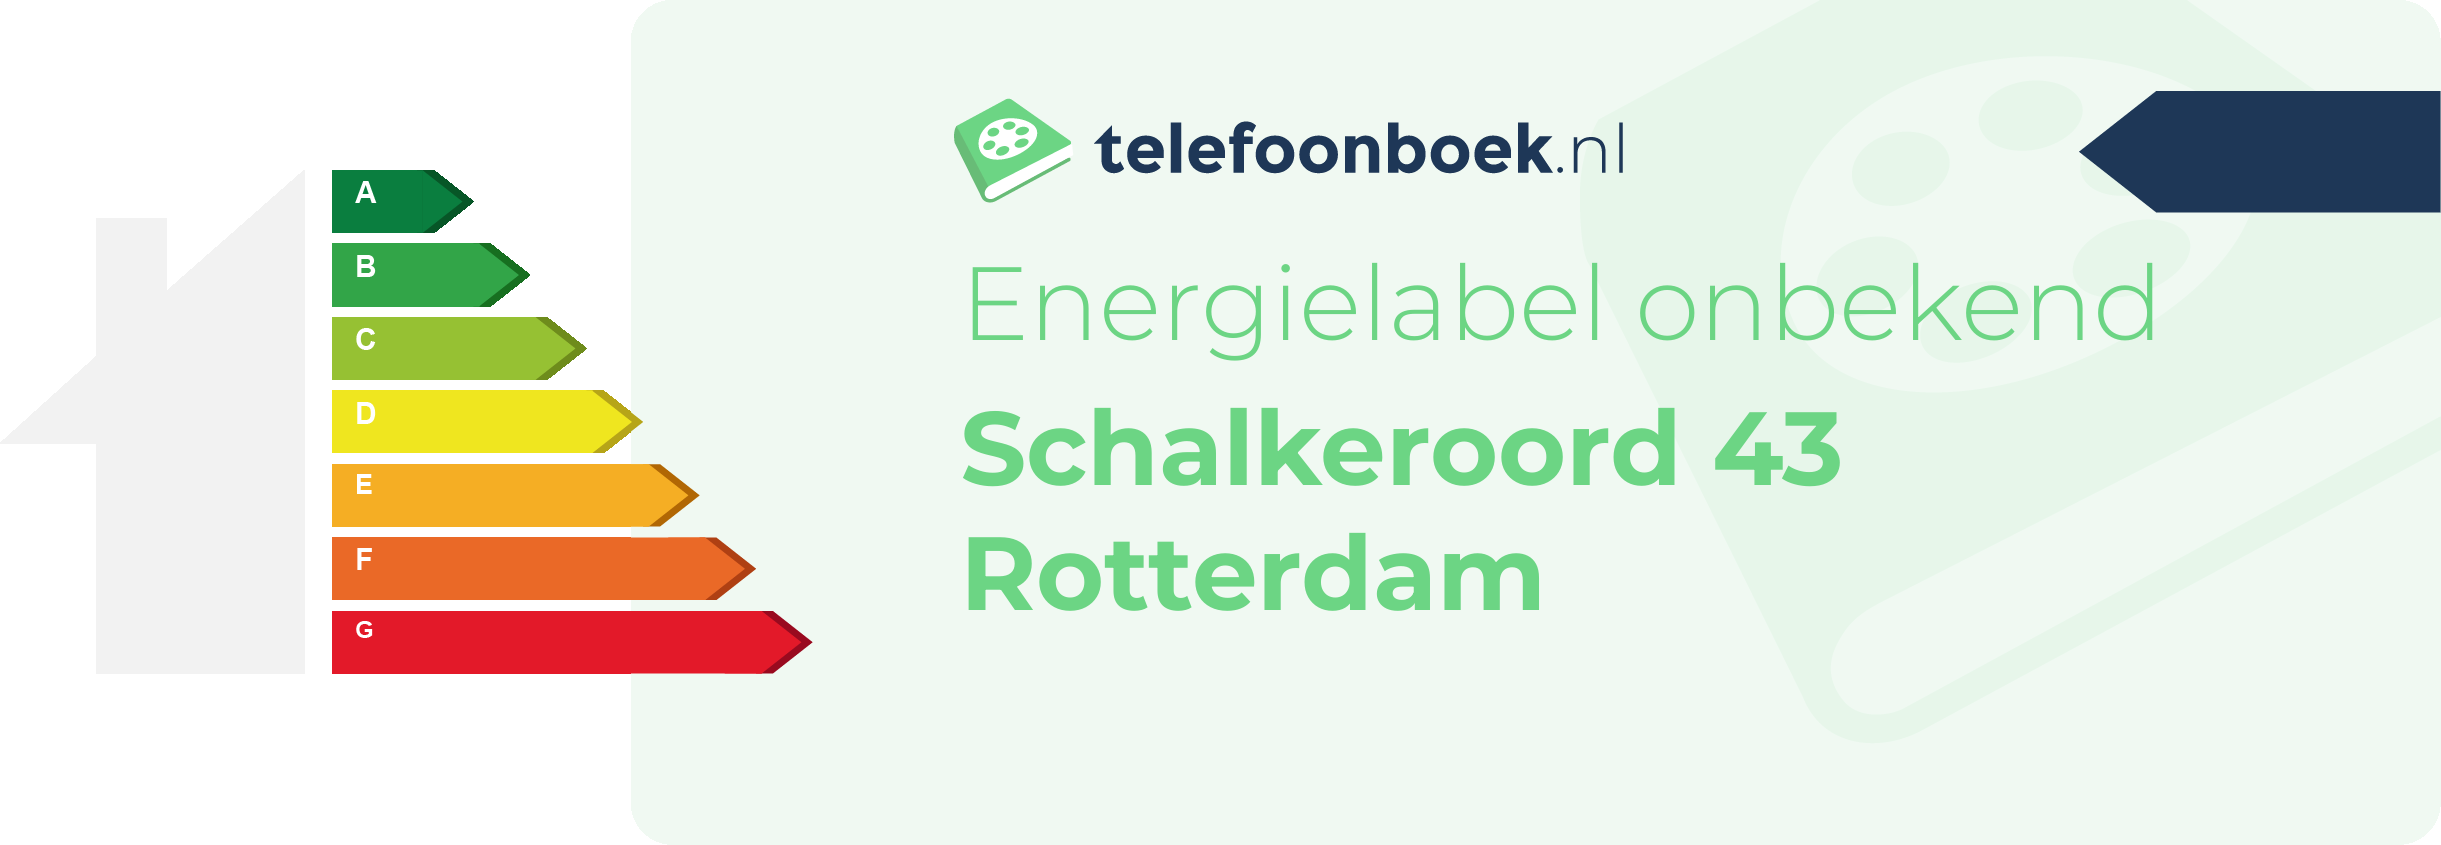 Energielabel Schalkeroord 43 Rotterdam